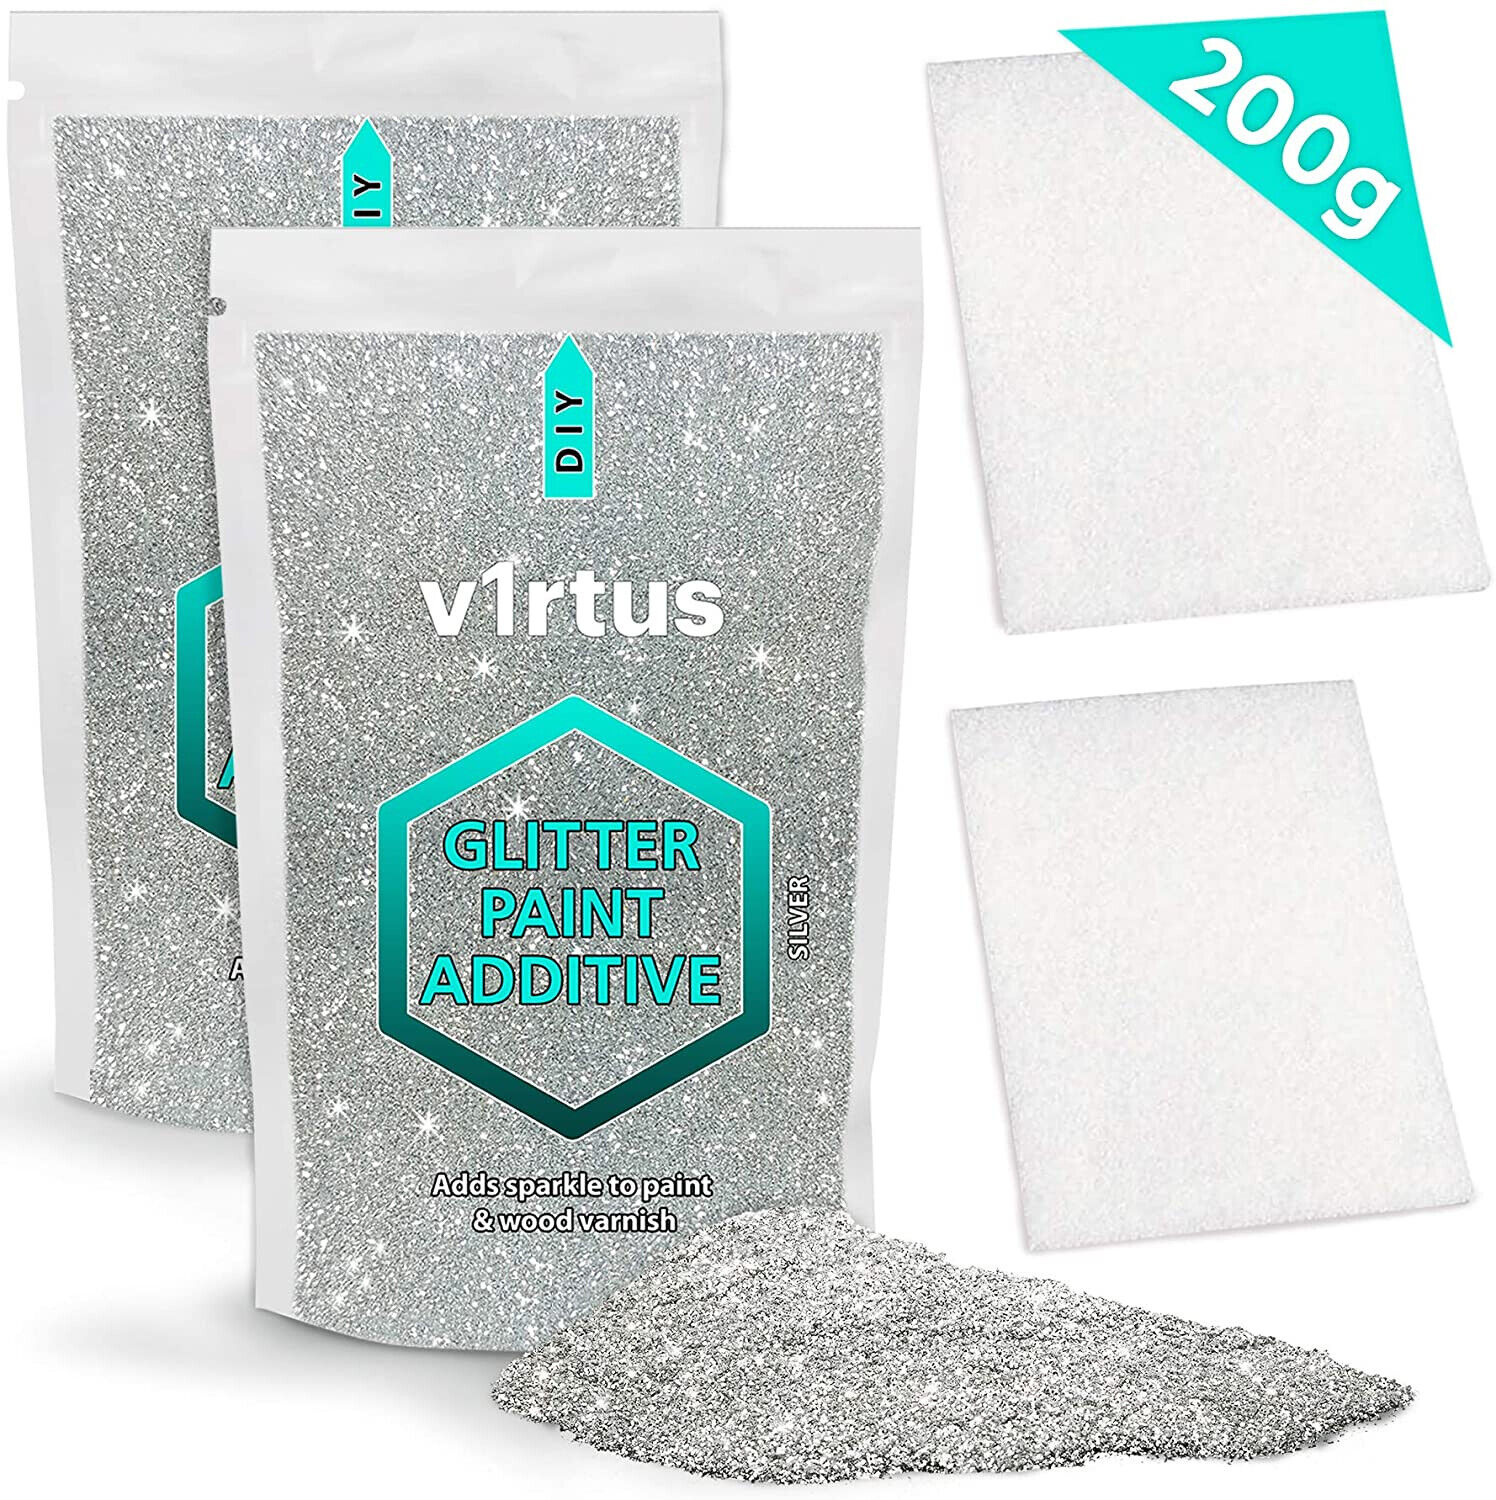 V1rtus Silber Premium Glitzer Farbe Additiv (2 x100g) Plus 2